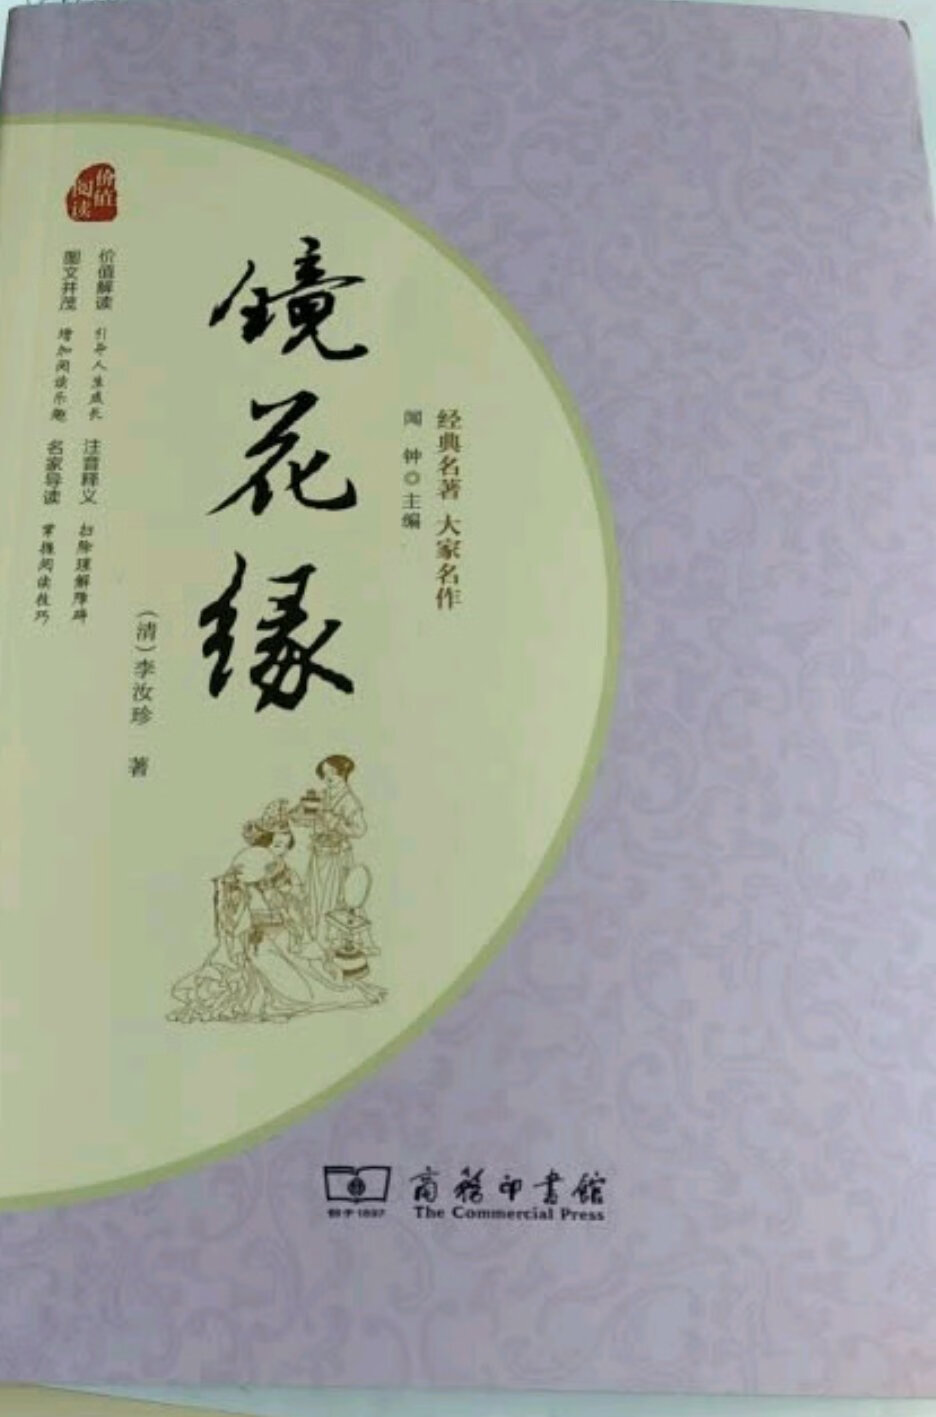 《镜花缘》 号称中文版的《格列佛游记》,古典长篇小说.值得推荐